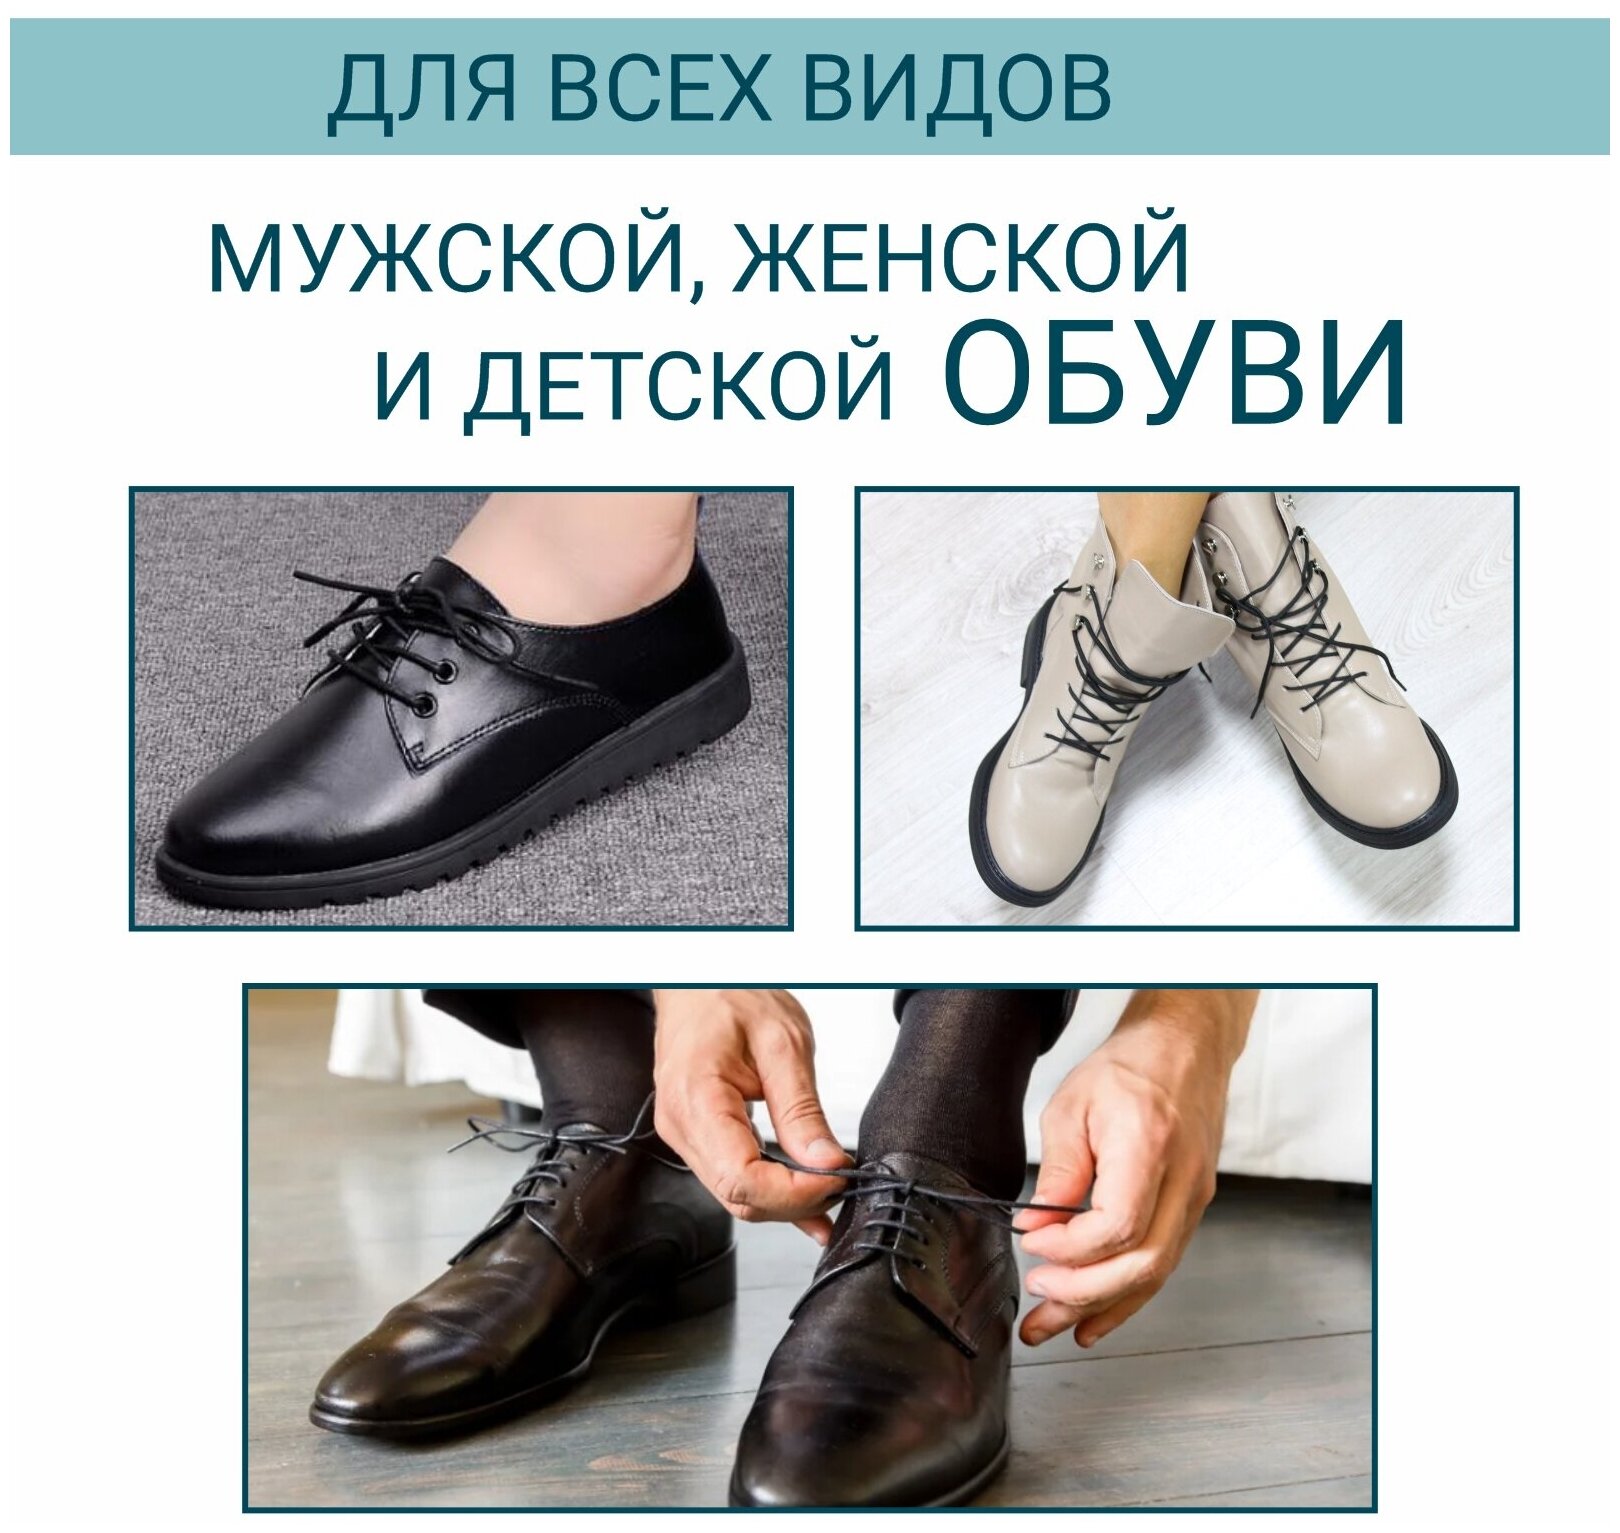 Шнурки для обуви GUIN Черные Тонкие Круглые 60 см, прочные шнурки для кроссовок, кед, ботинок, берцев с пропиткой, вощенные, универсальные - фотография № 5